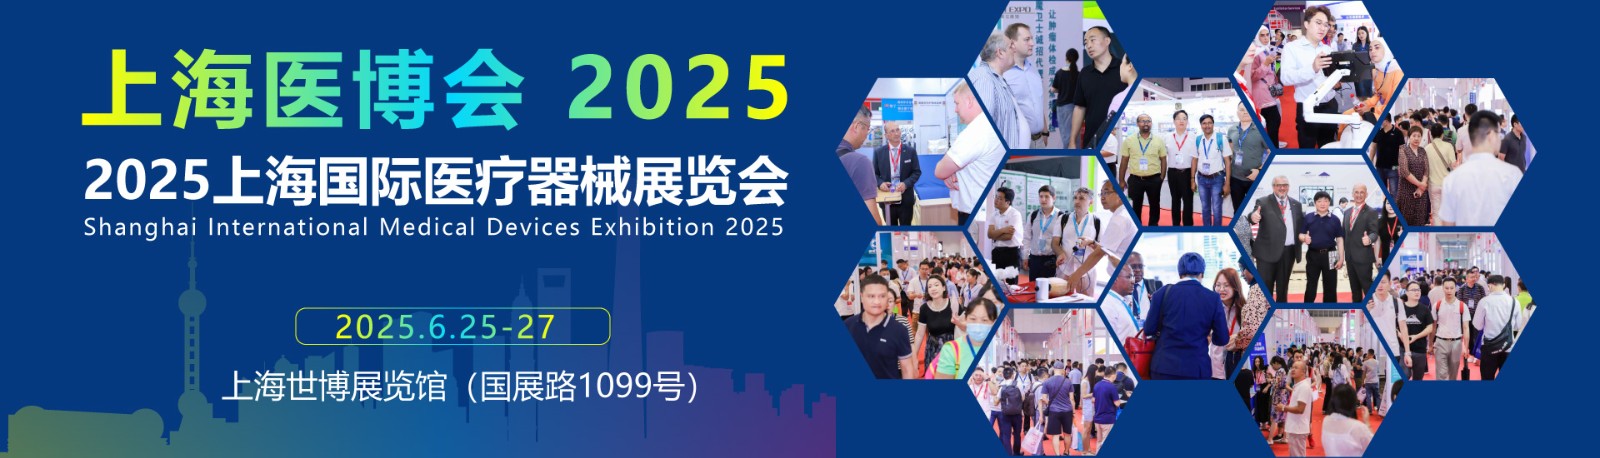 参加2025上海国际医疗器械展览会，共同开启医疗器械行业的新篇章！